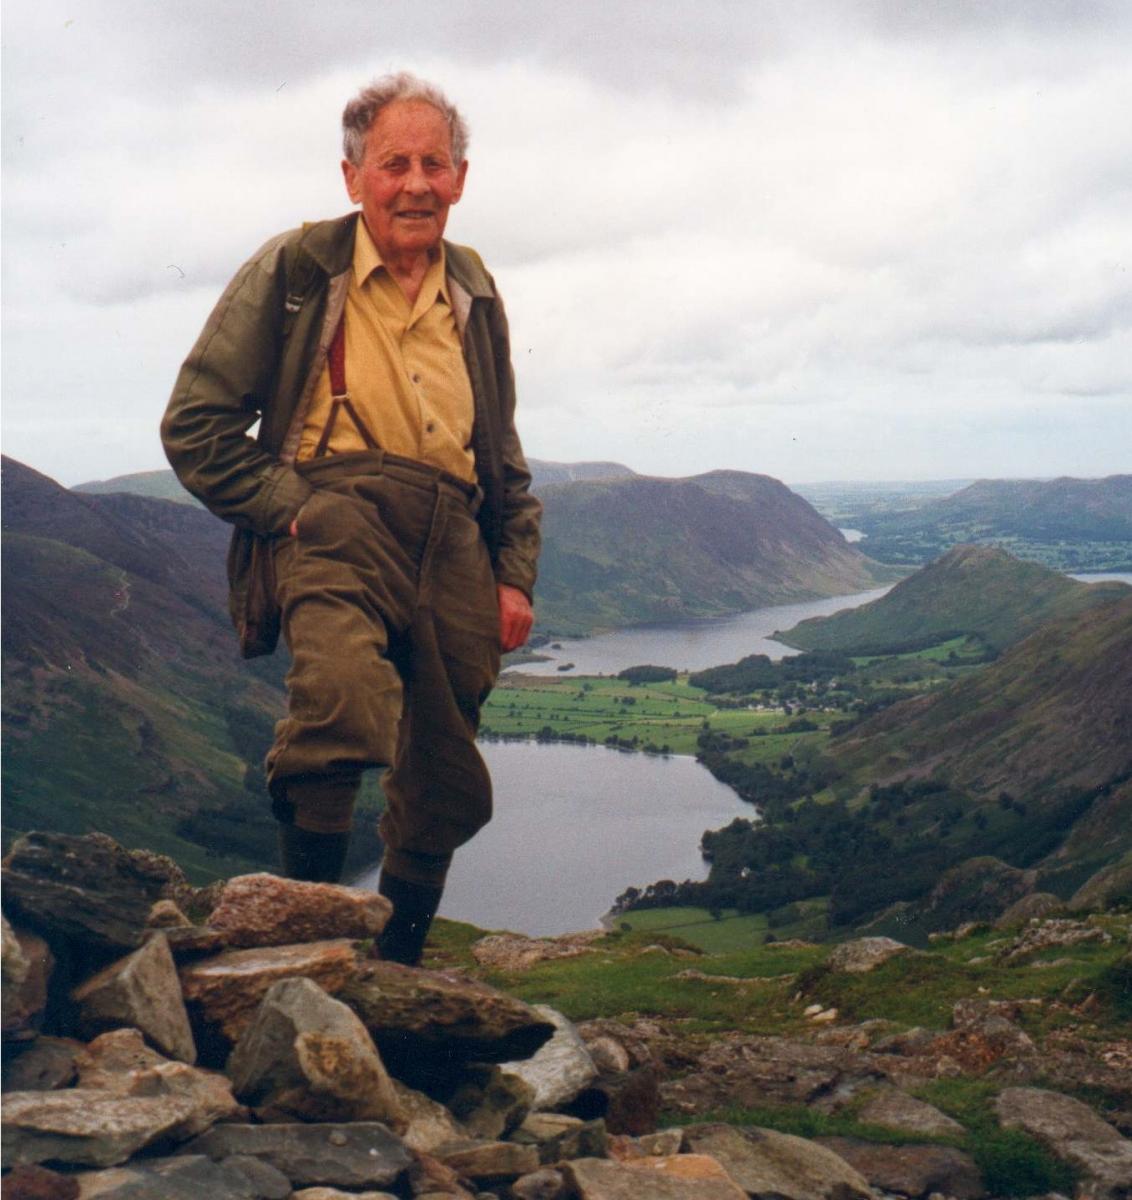 Donald Watson Mountain walking in his 90s